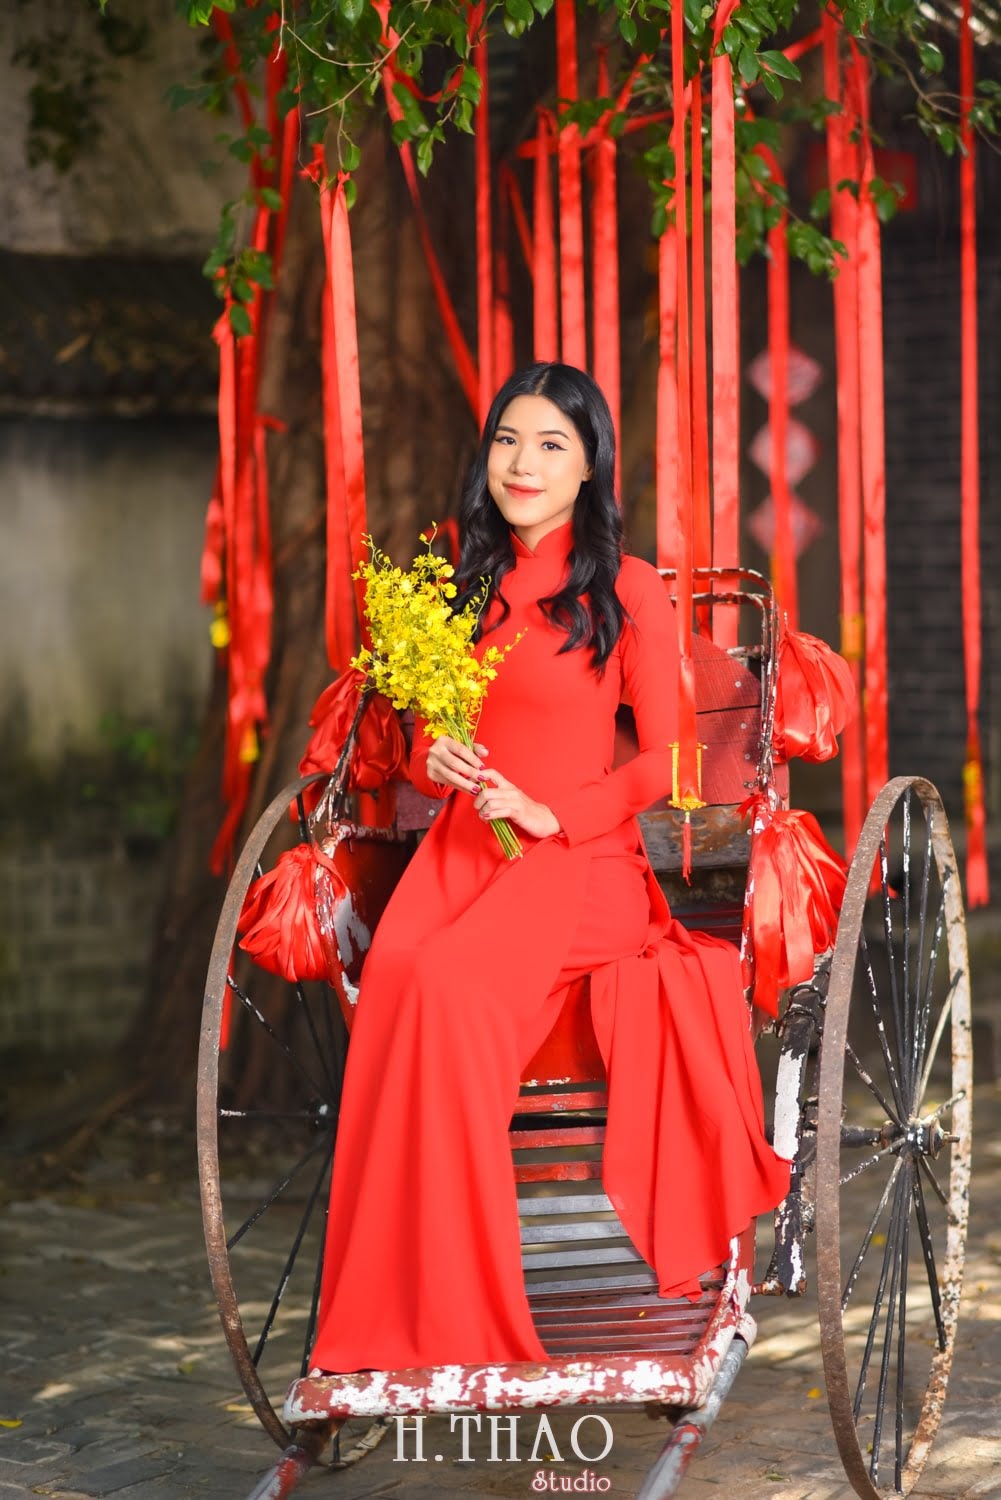 Ao dai alibaba 5 min - Top 40 ảnh áo dài chụp với Hoa đào, hoa mai tết tuyệt đẹp- HThao Studio